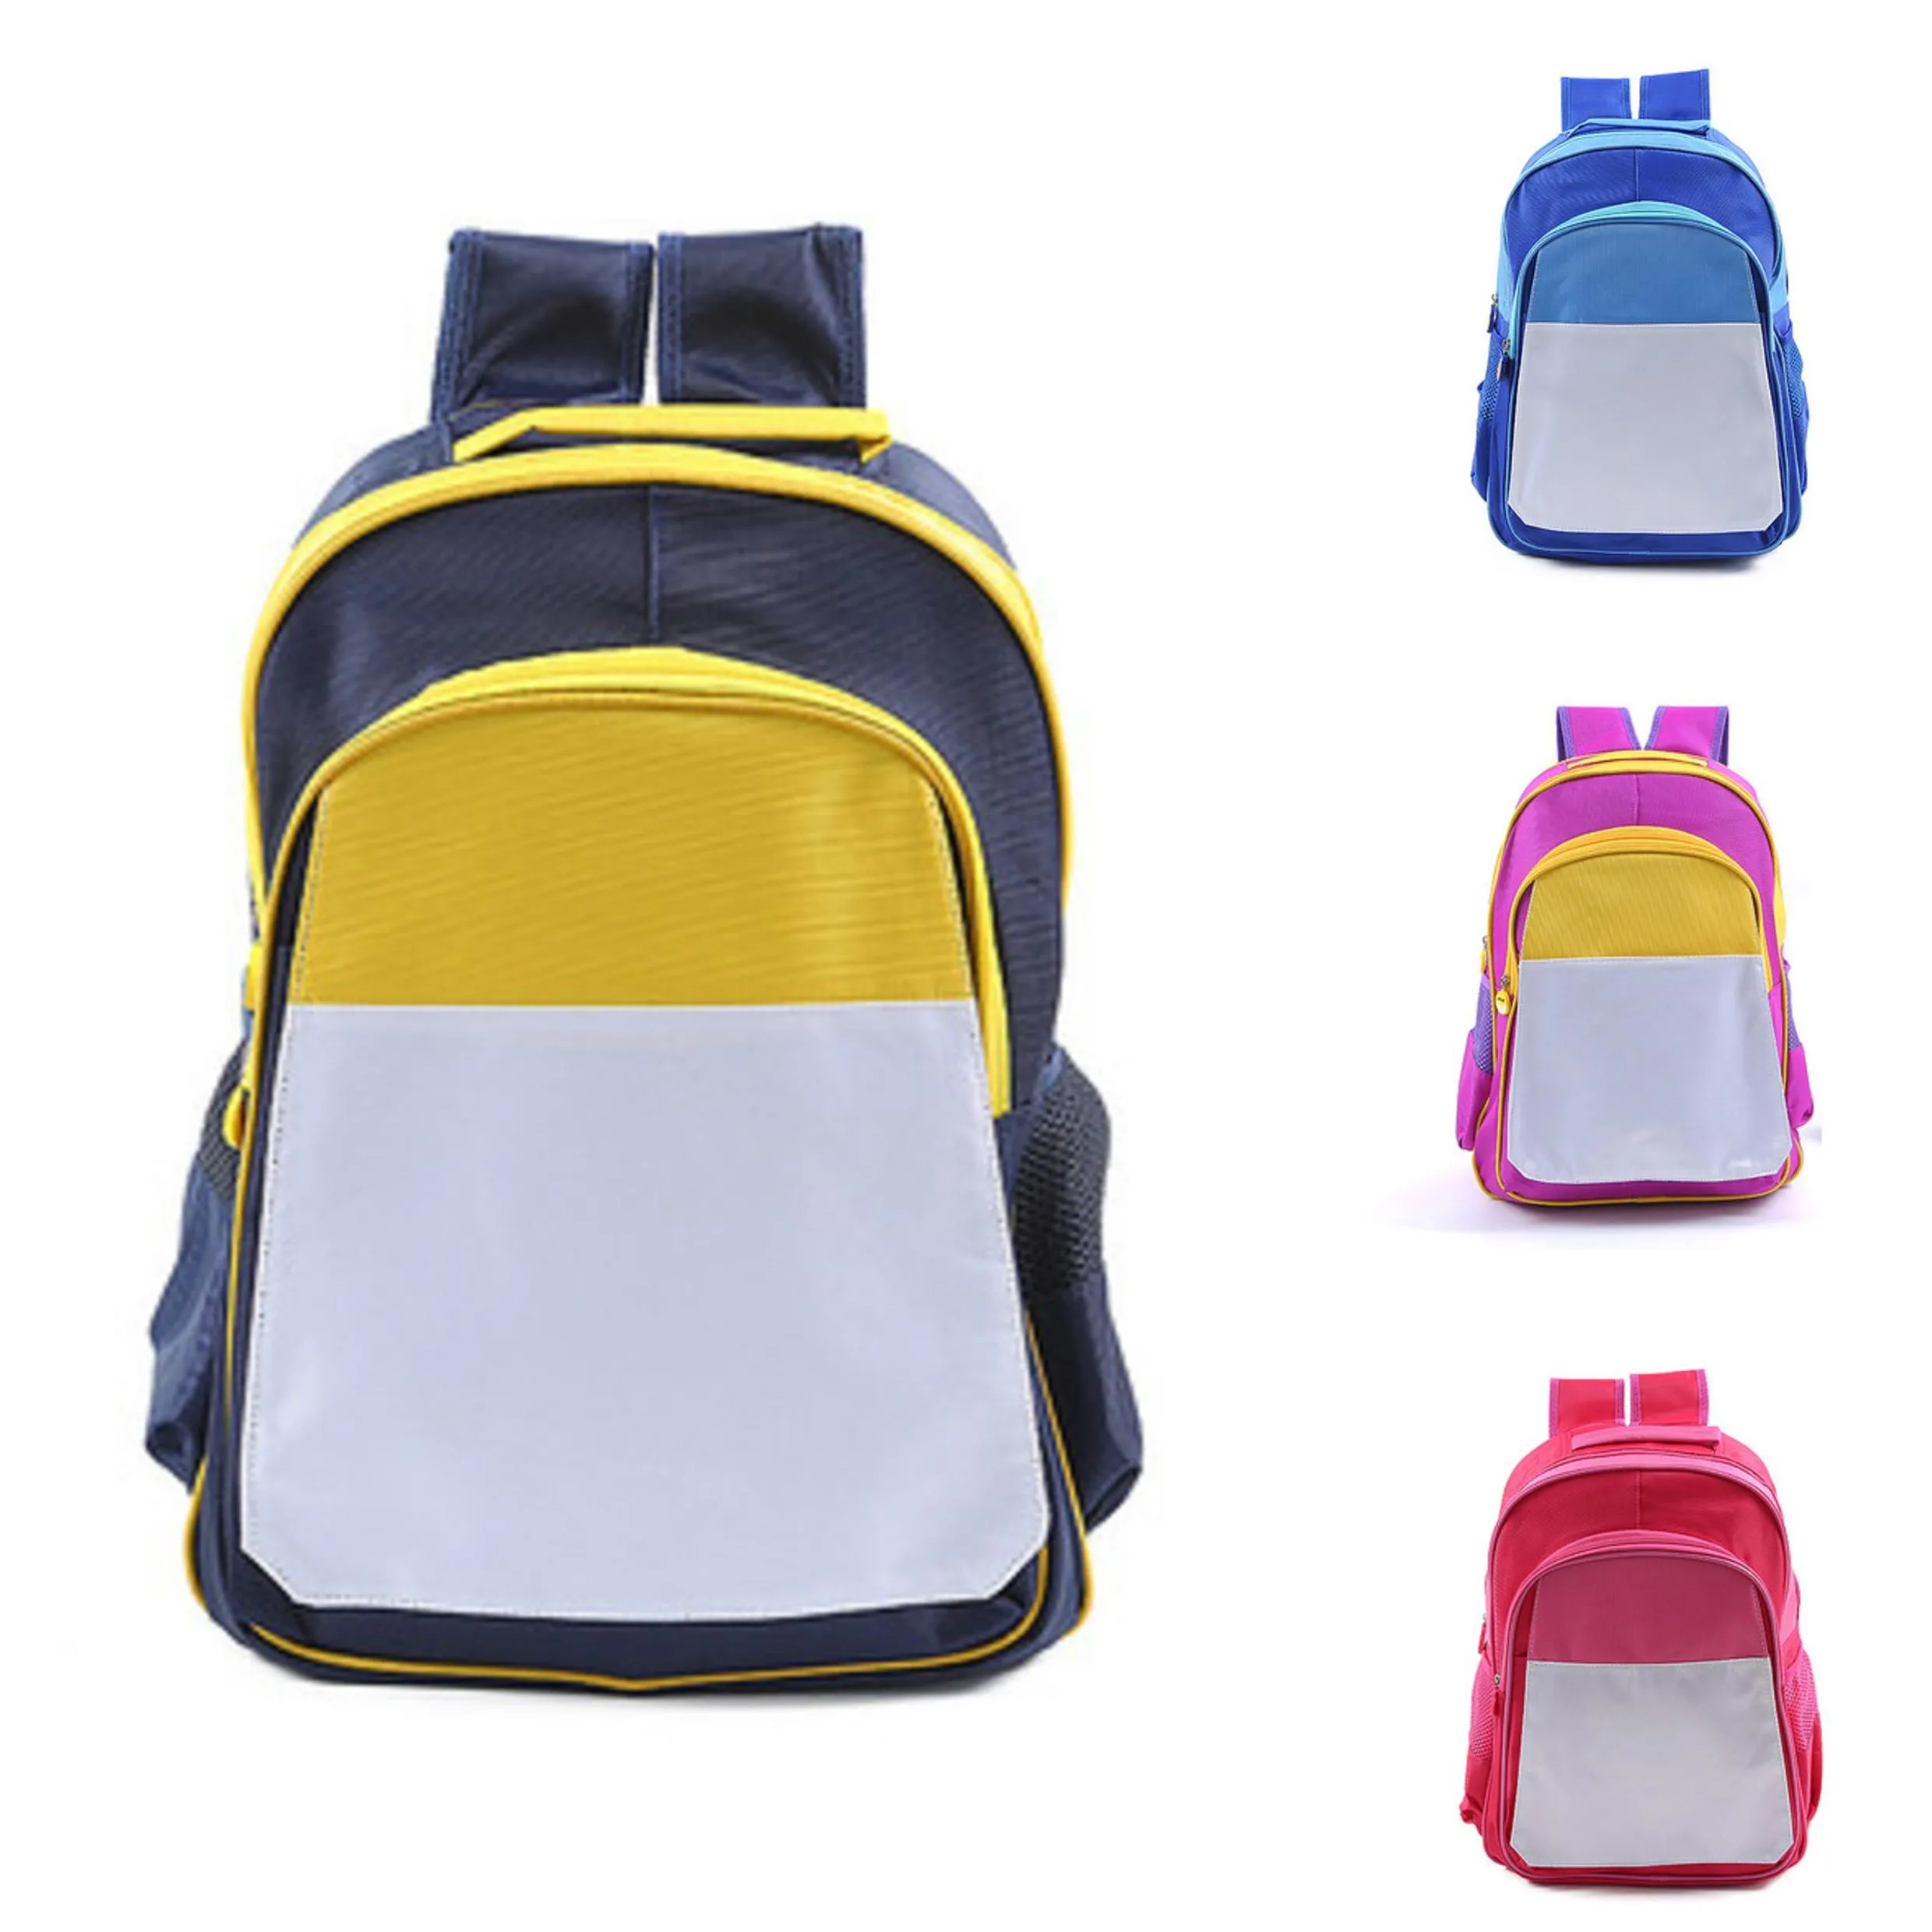 MDF сублимации заготовки DIY детские передачи мешок рюкзак тепла отпечатанные фотографии пустые расходники 4 цвета школьный